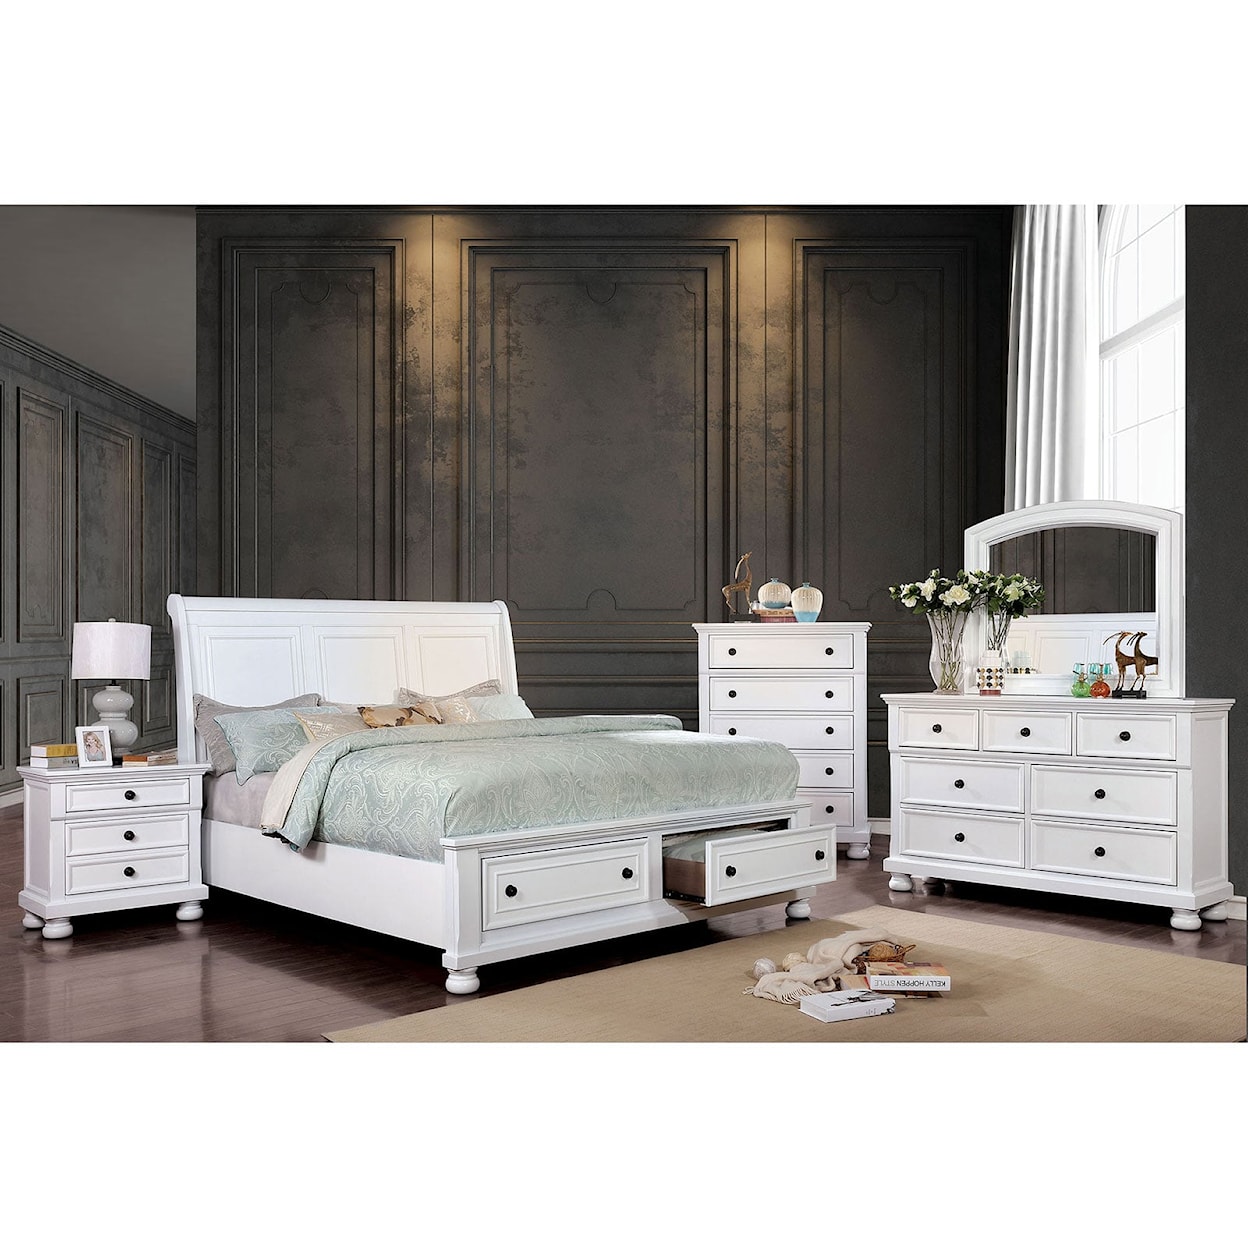 Furniture of America Castor 4 Pc. Queen Bedroom Set